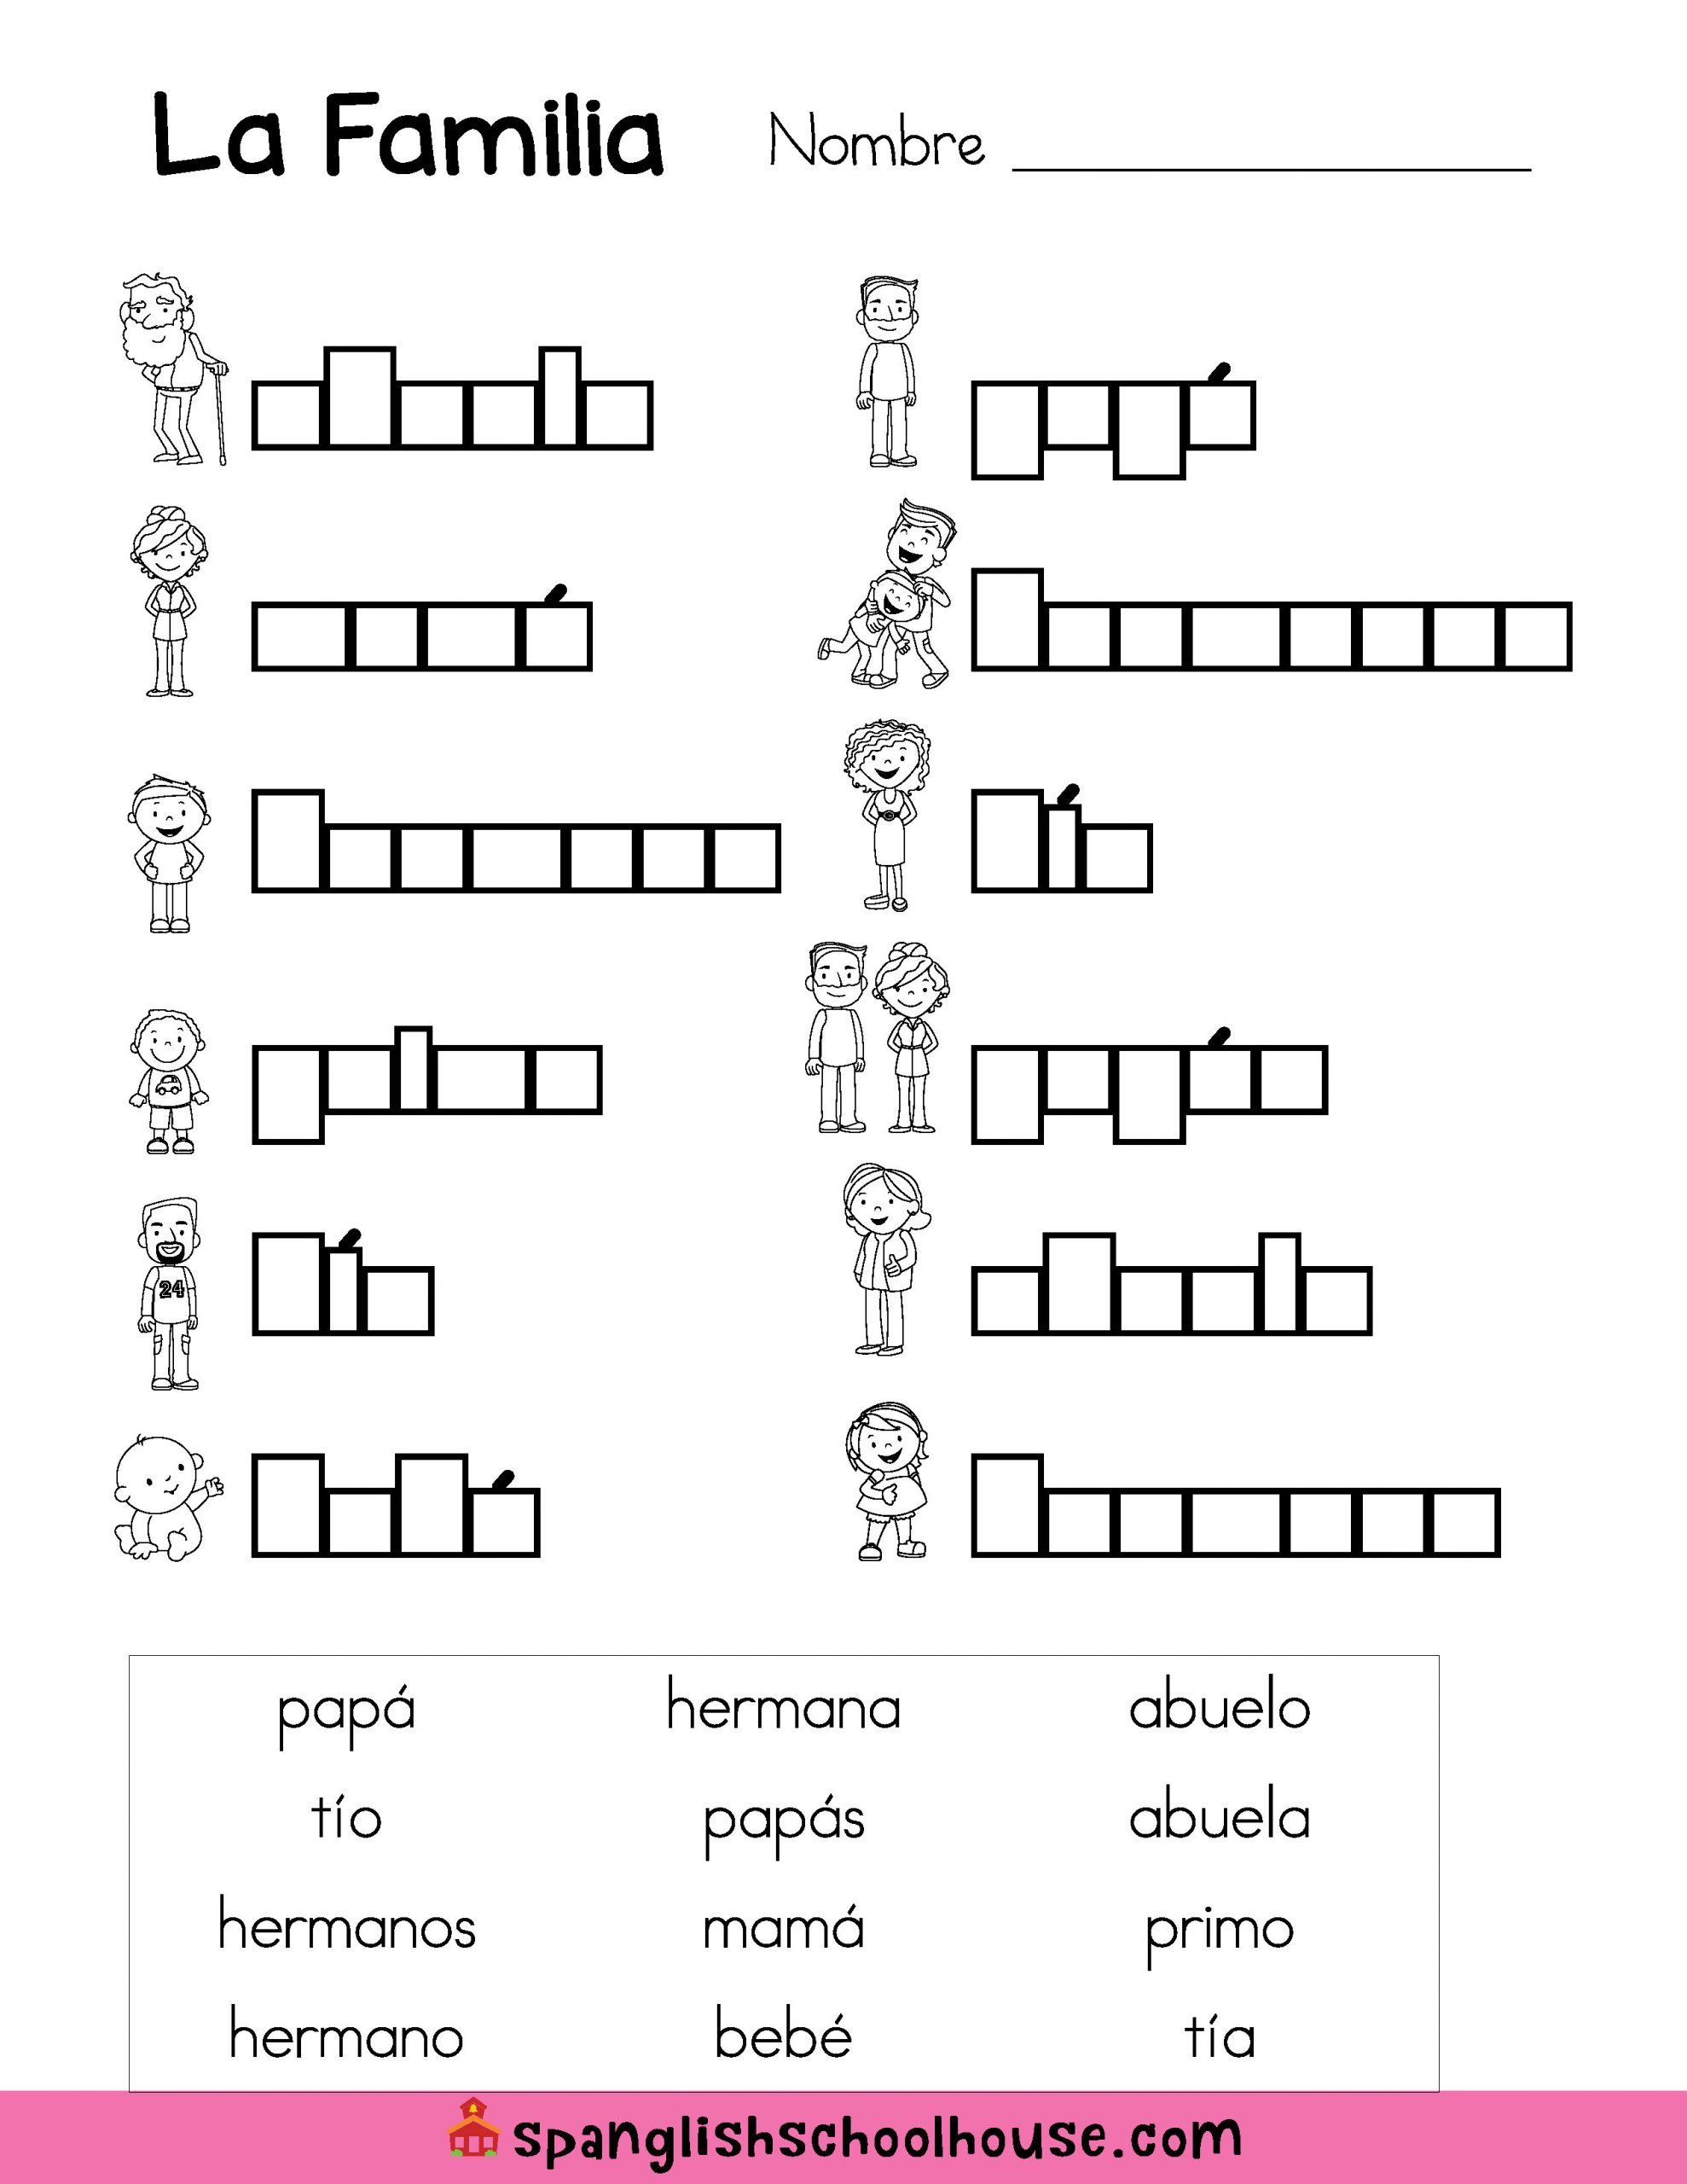 La Familia Worksheet In Spanish La Familia Family Vocabulary In Spanish